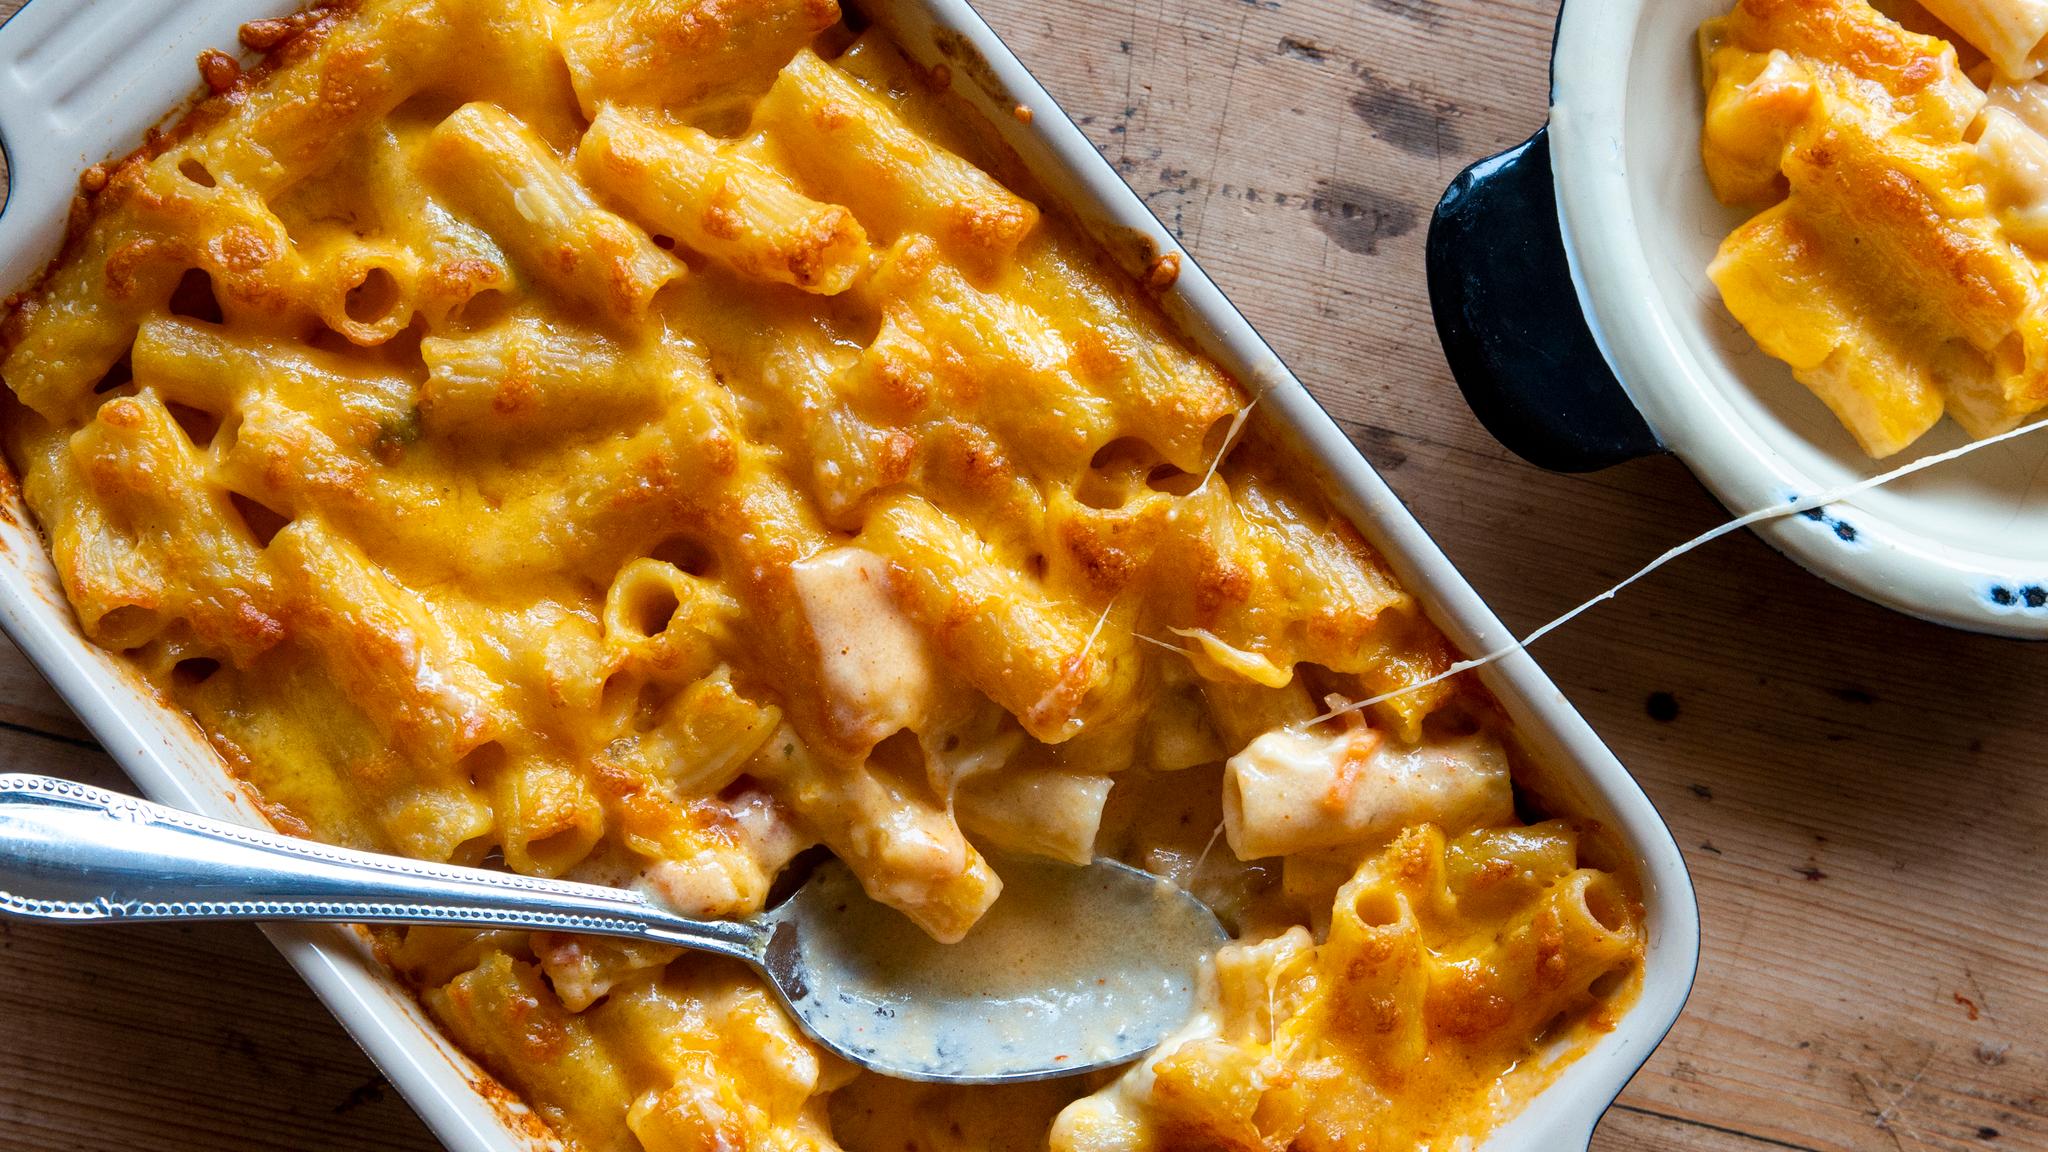 Mac and cheese er bare skamløst godt! Prøv denne.